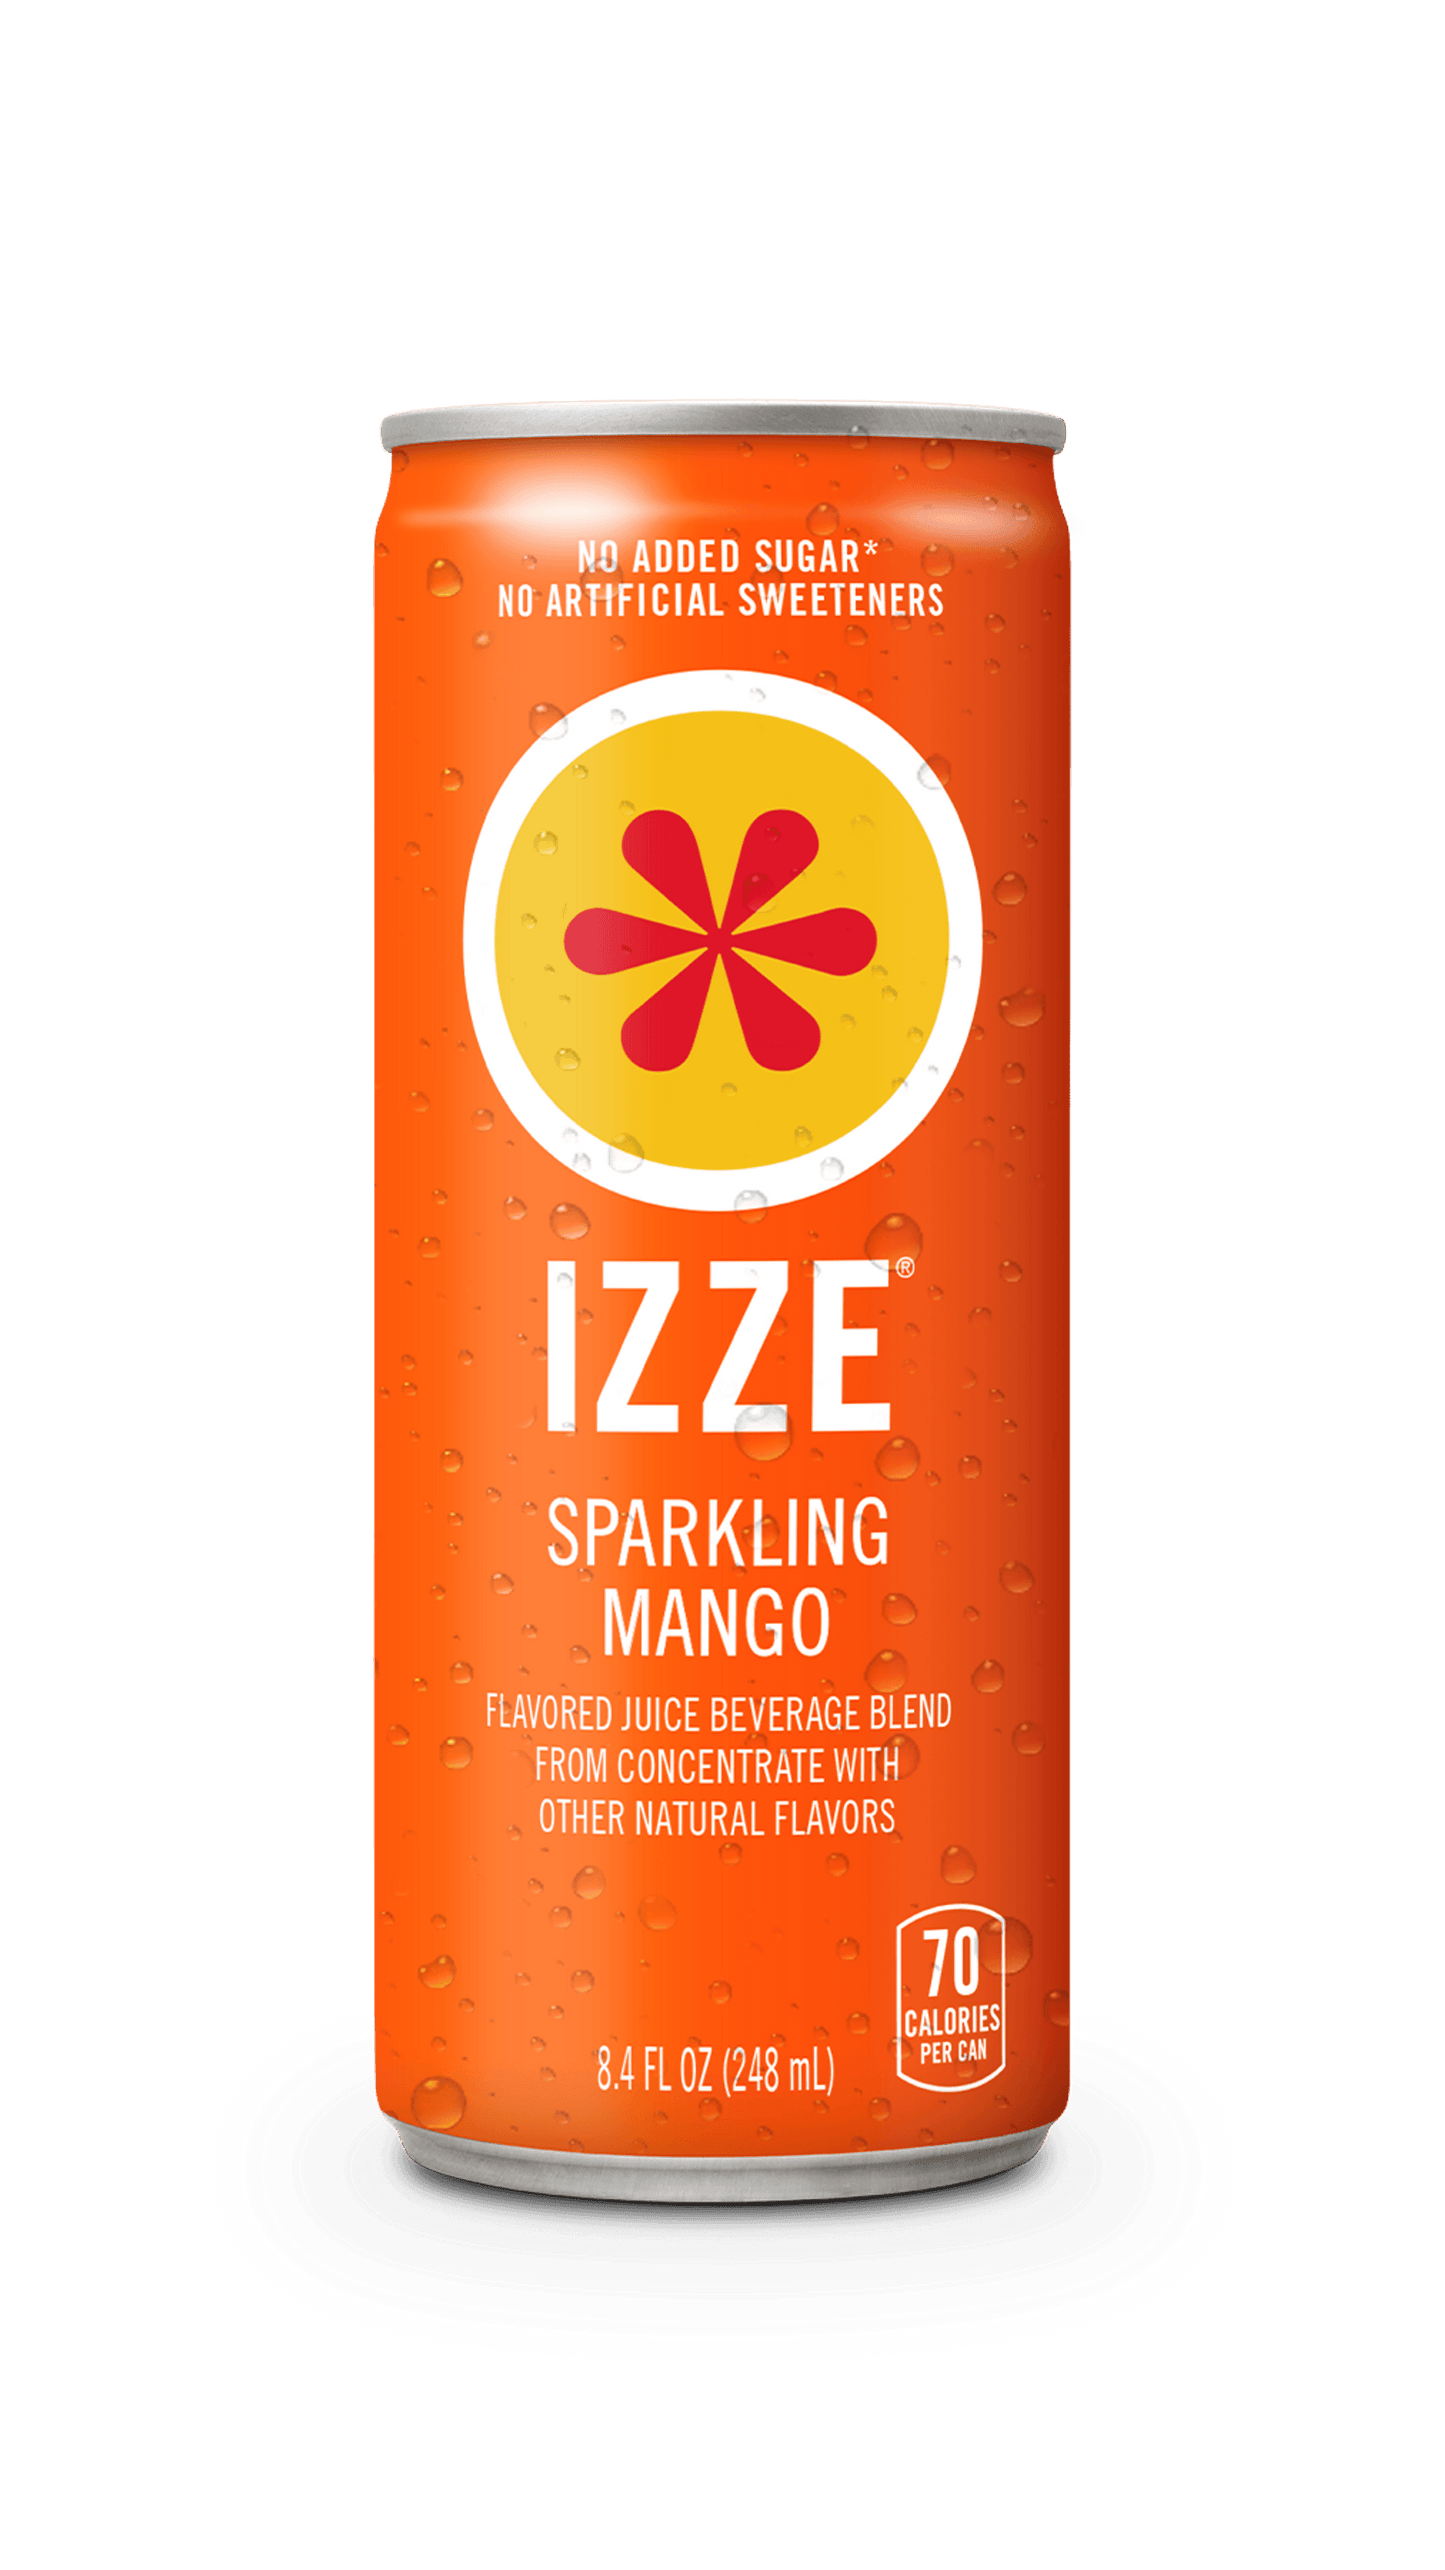 IZZE, Sparkling Juice Beverage, 8.4 fl oz